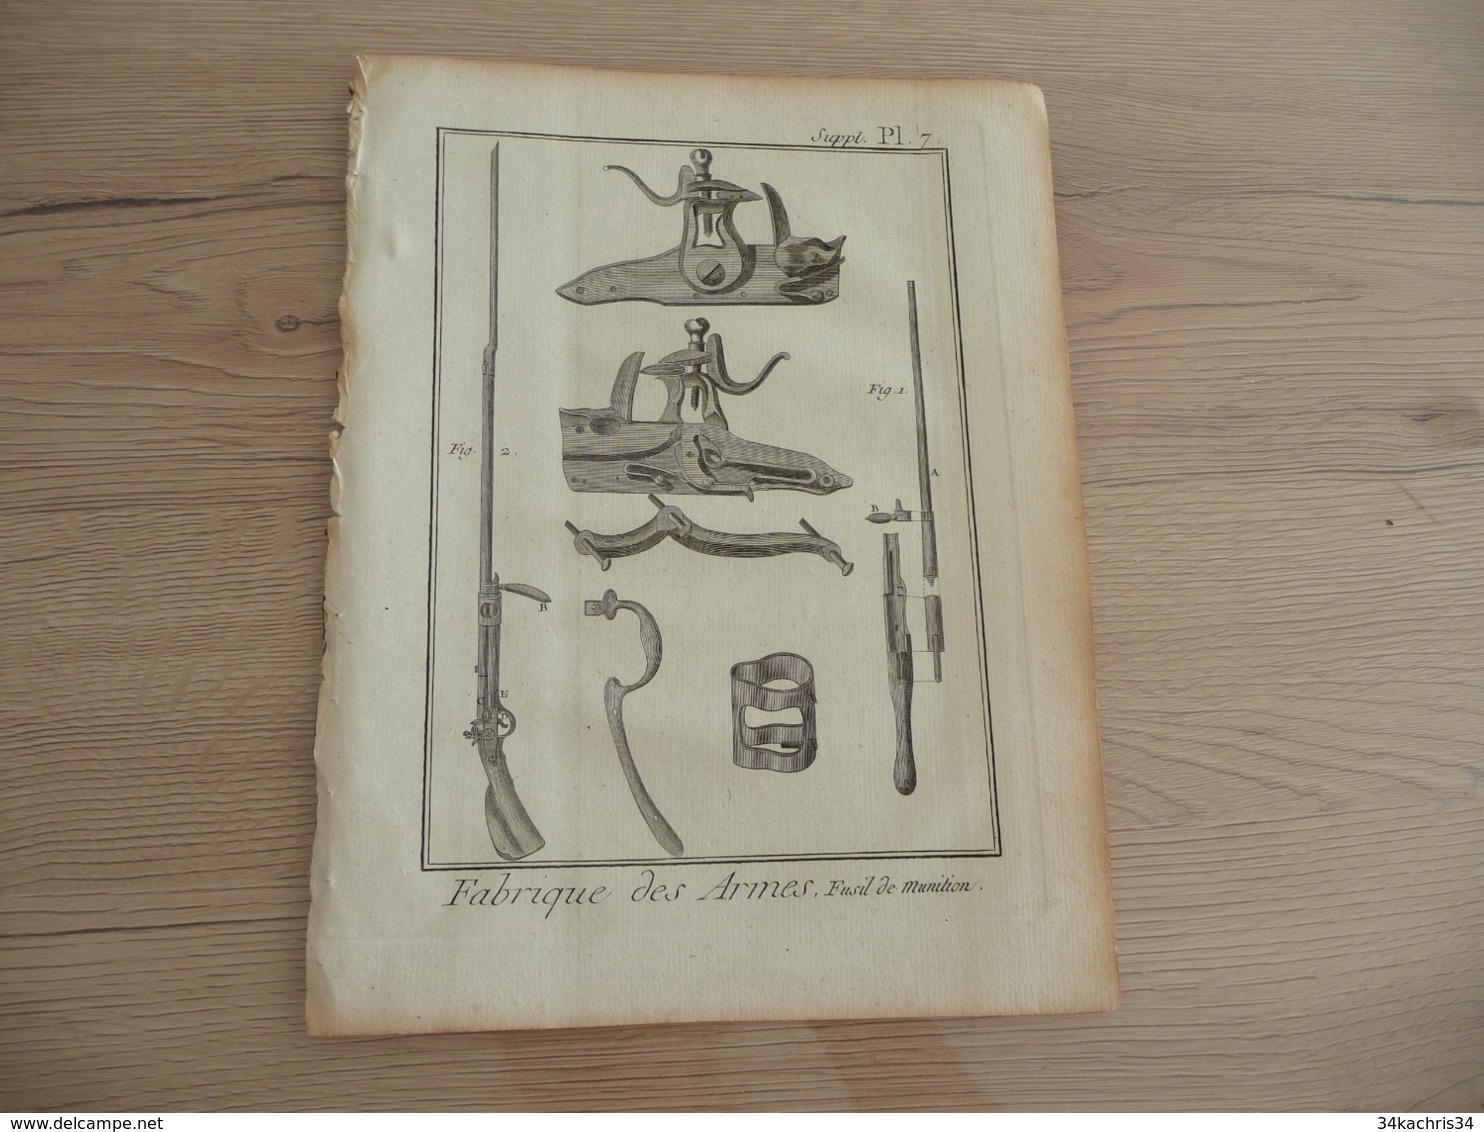 Rare Gravure Estampe Originale Diderot D'Alembert 1778 Armes Fusils 19.5 X 25.7 Fabrique Des Armes - Documents